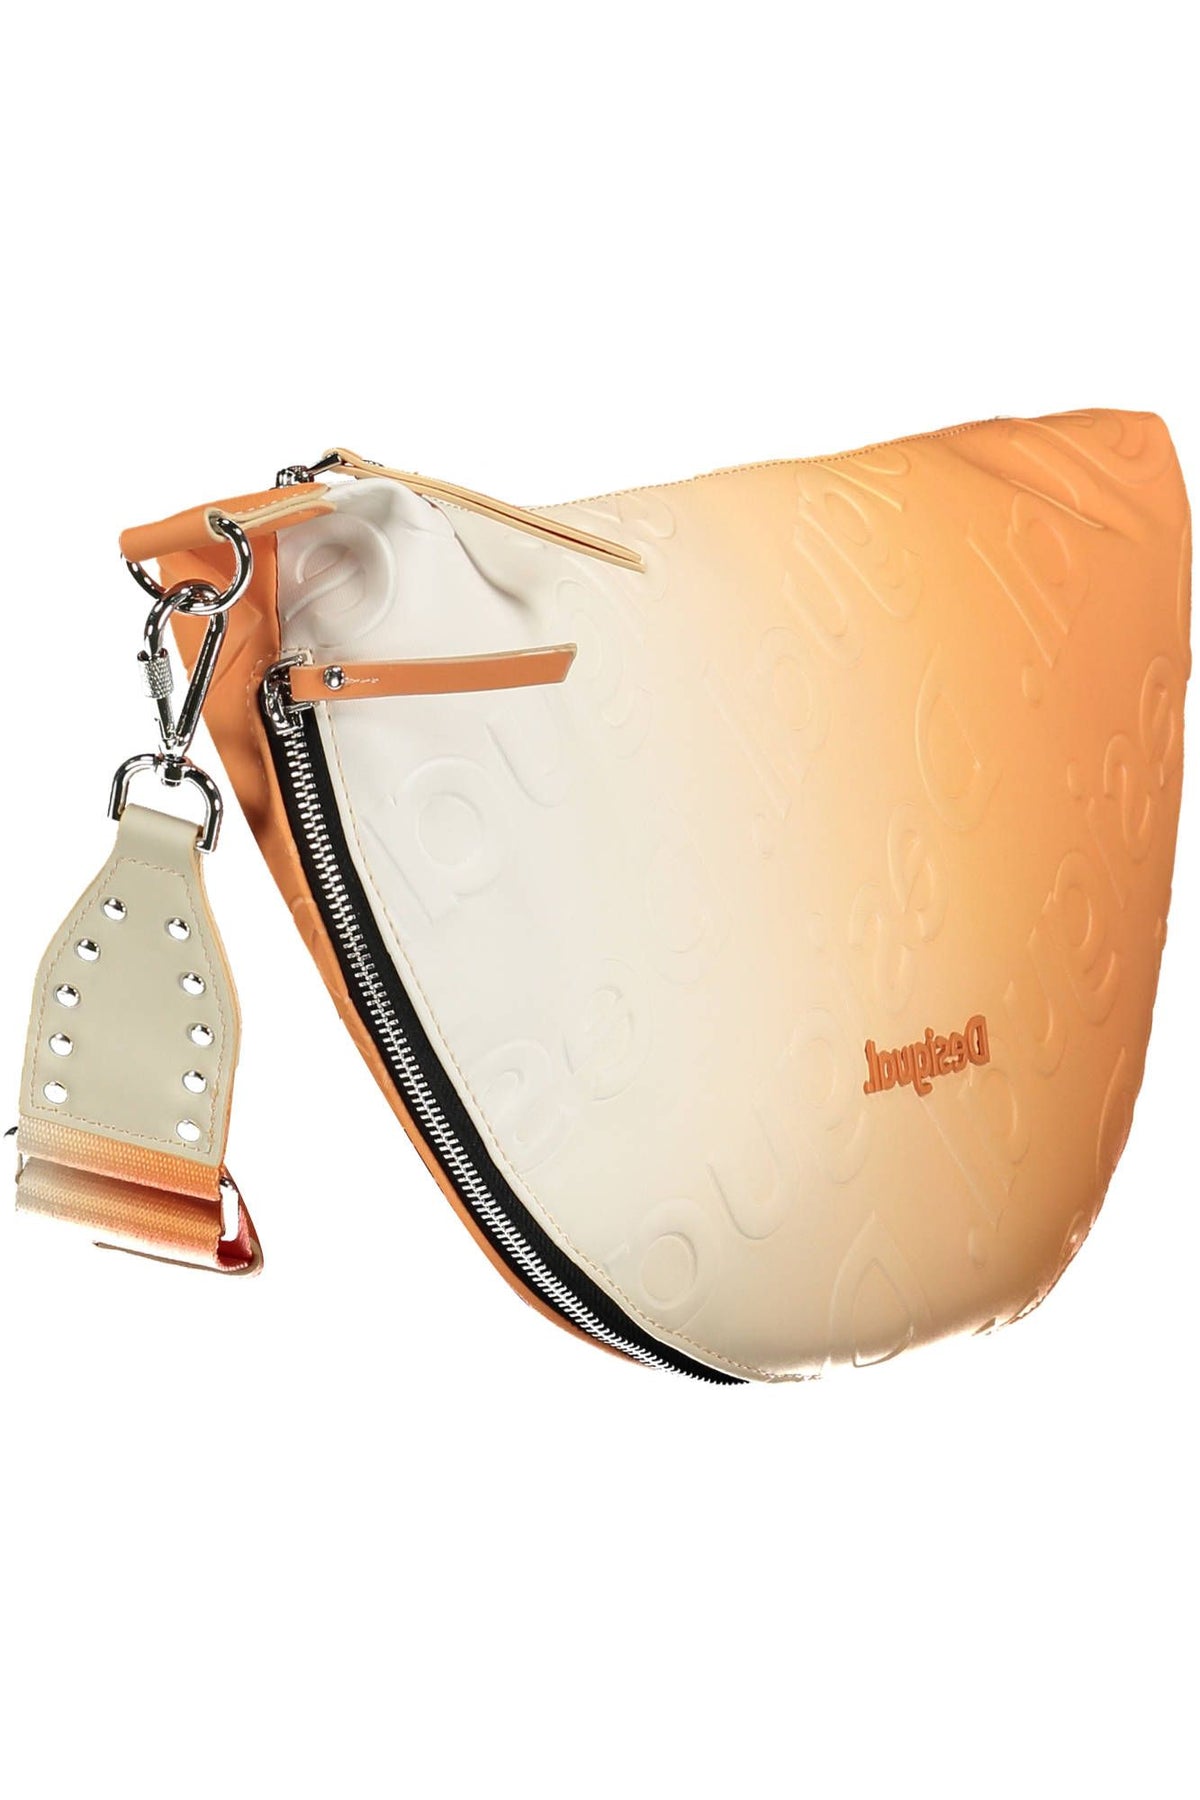 Desigual – Erweiterbare Handtasche in leuchtendem Orange